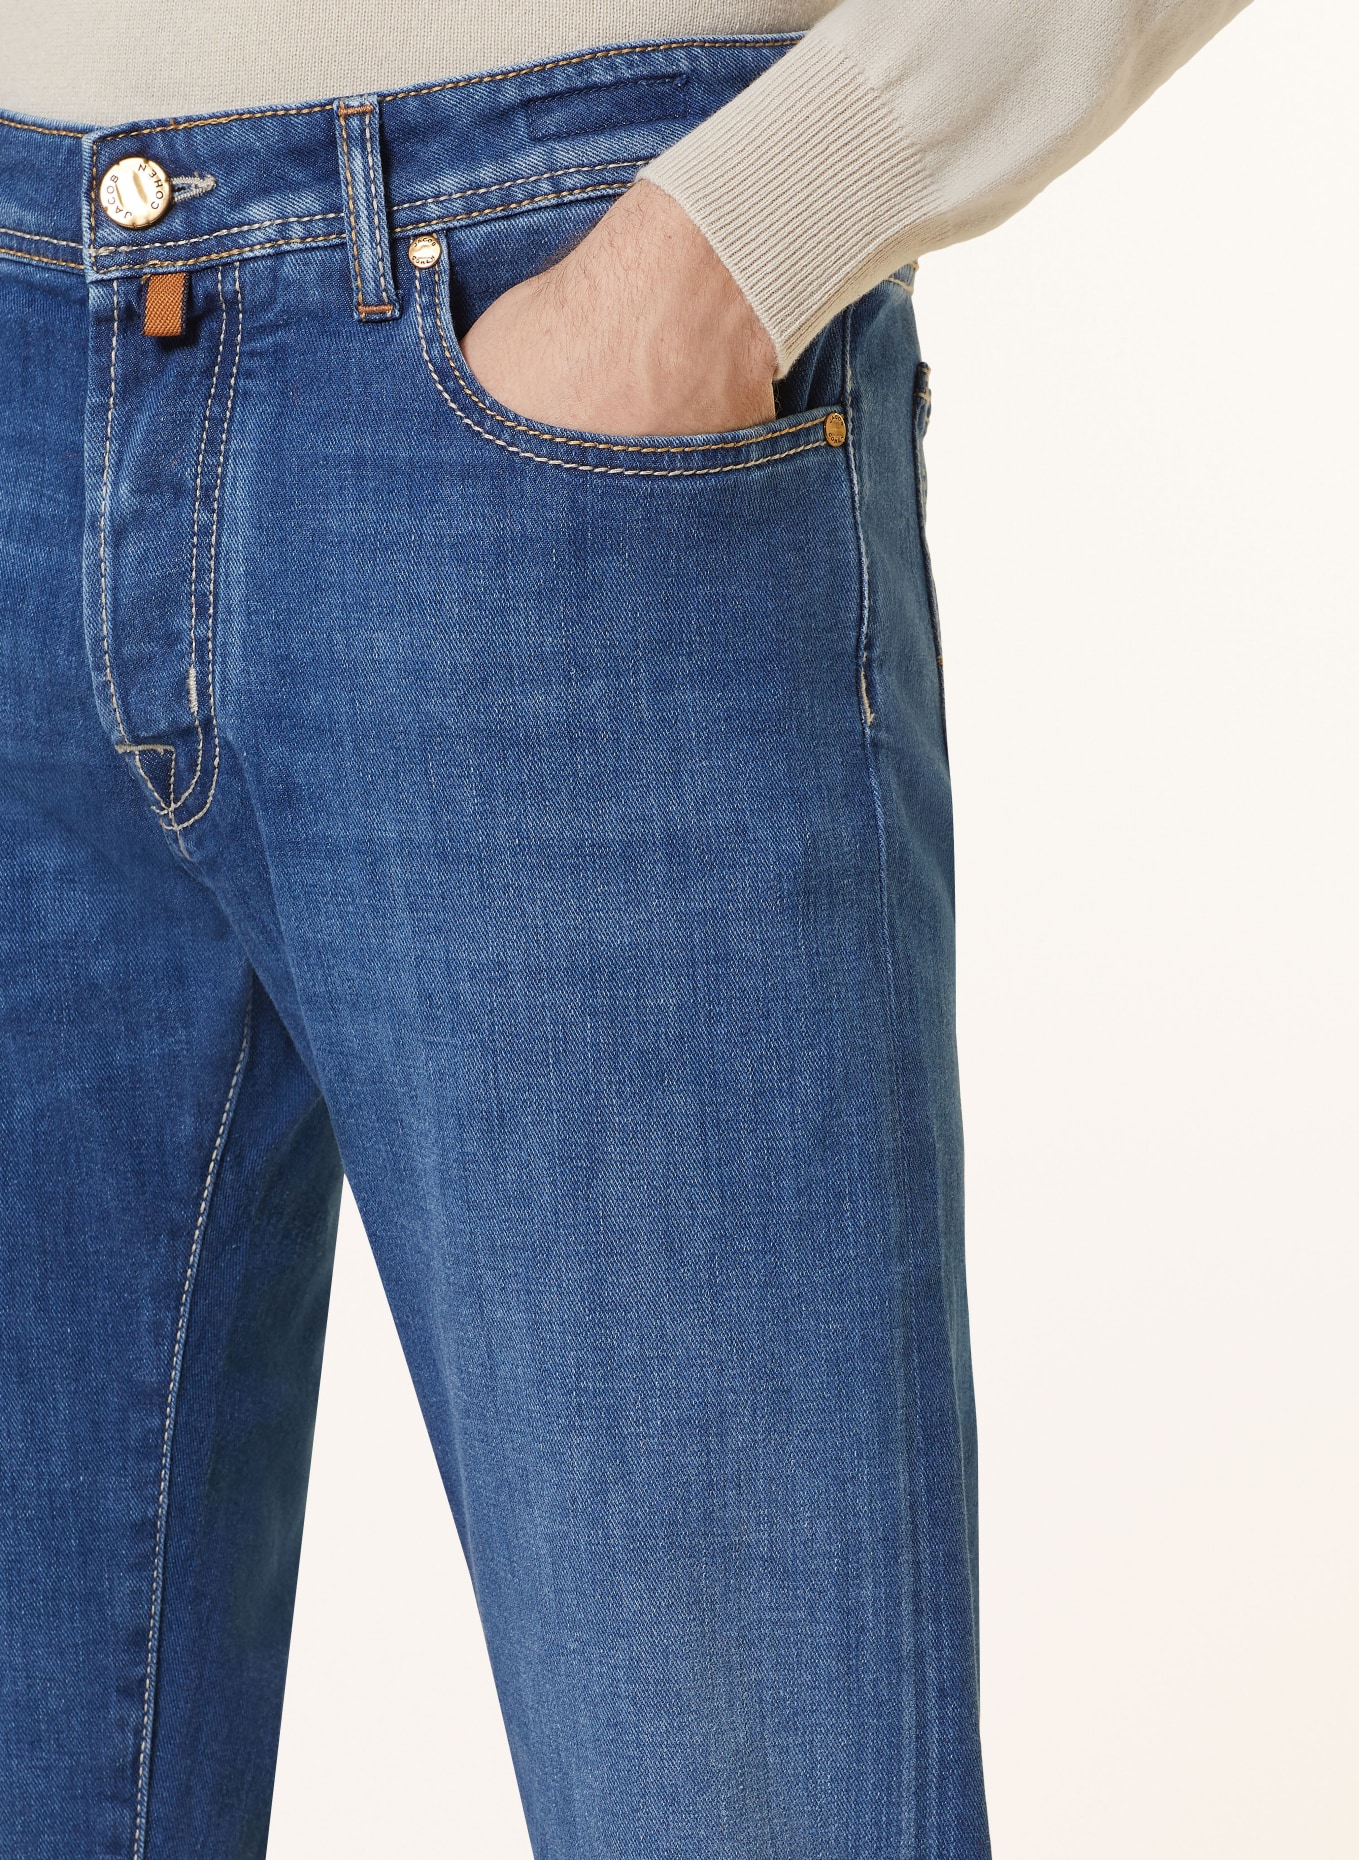 JACOB COHEN Jeans BARD slim fit, Color: 724D Light Blue (Image 5)